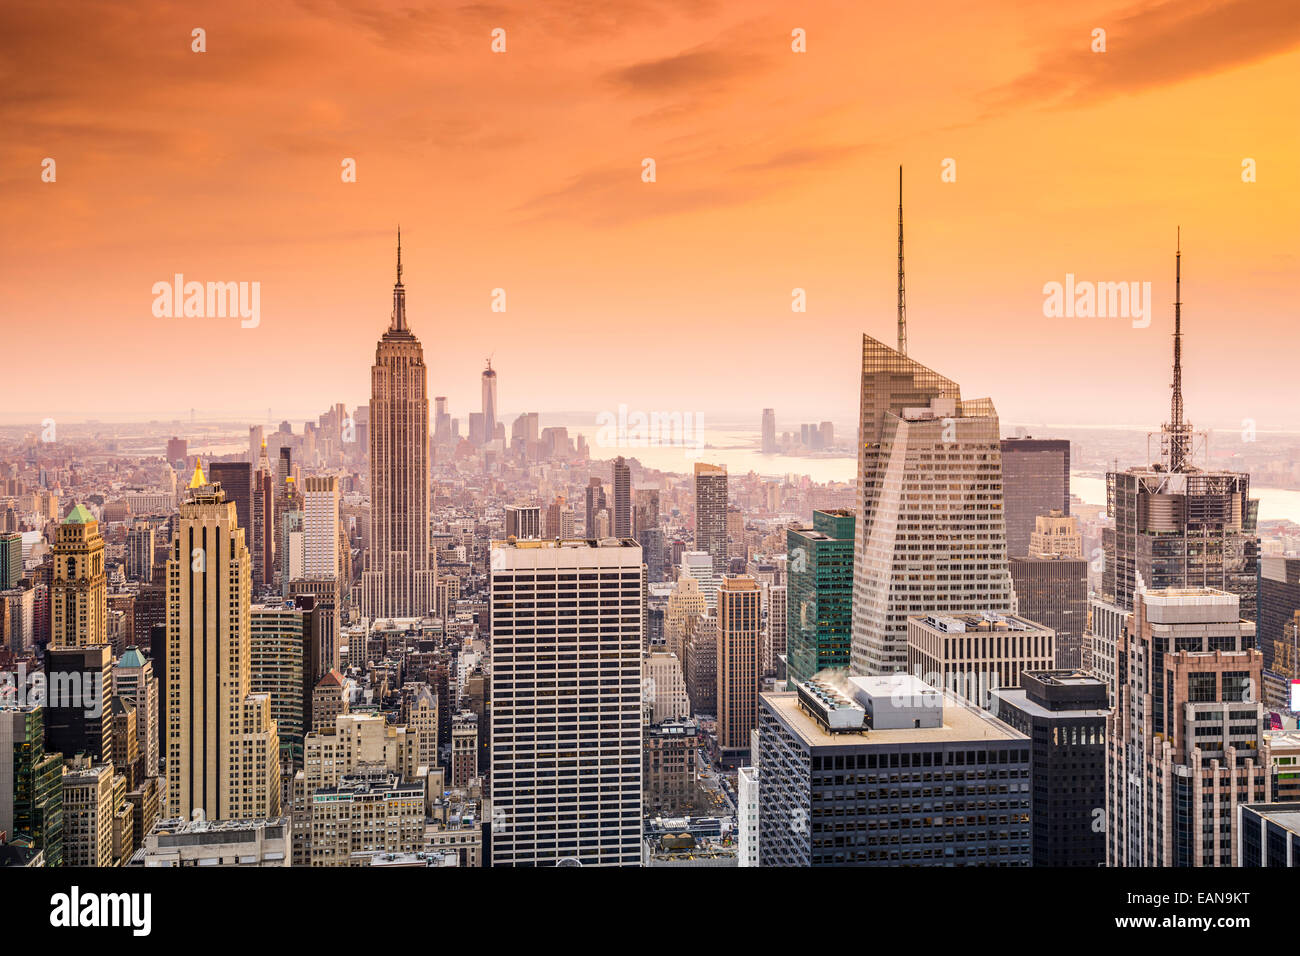 La Ciudad de Nueva York, EE.UU., el horizonte de la ciudad de Midtown Manhattan. Foto de stock